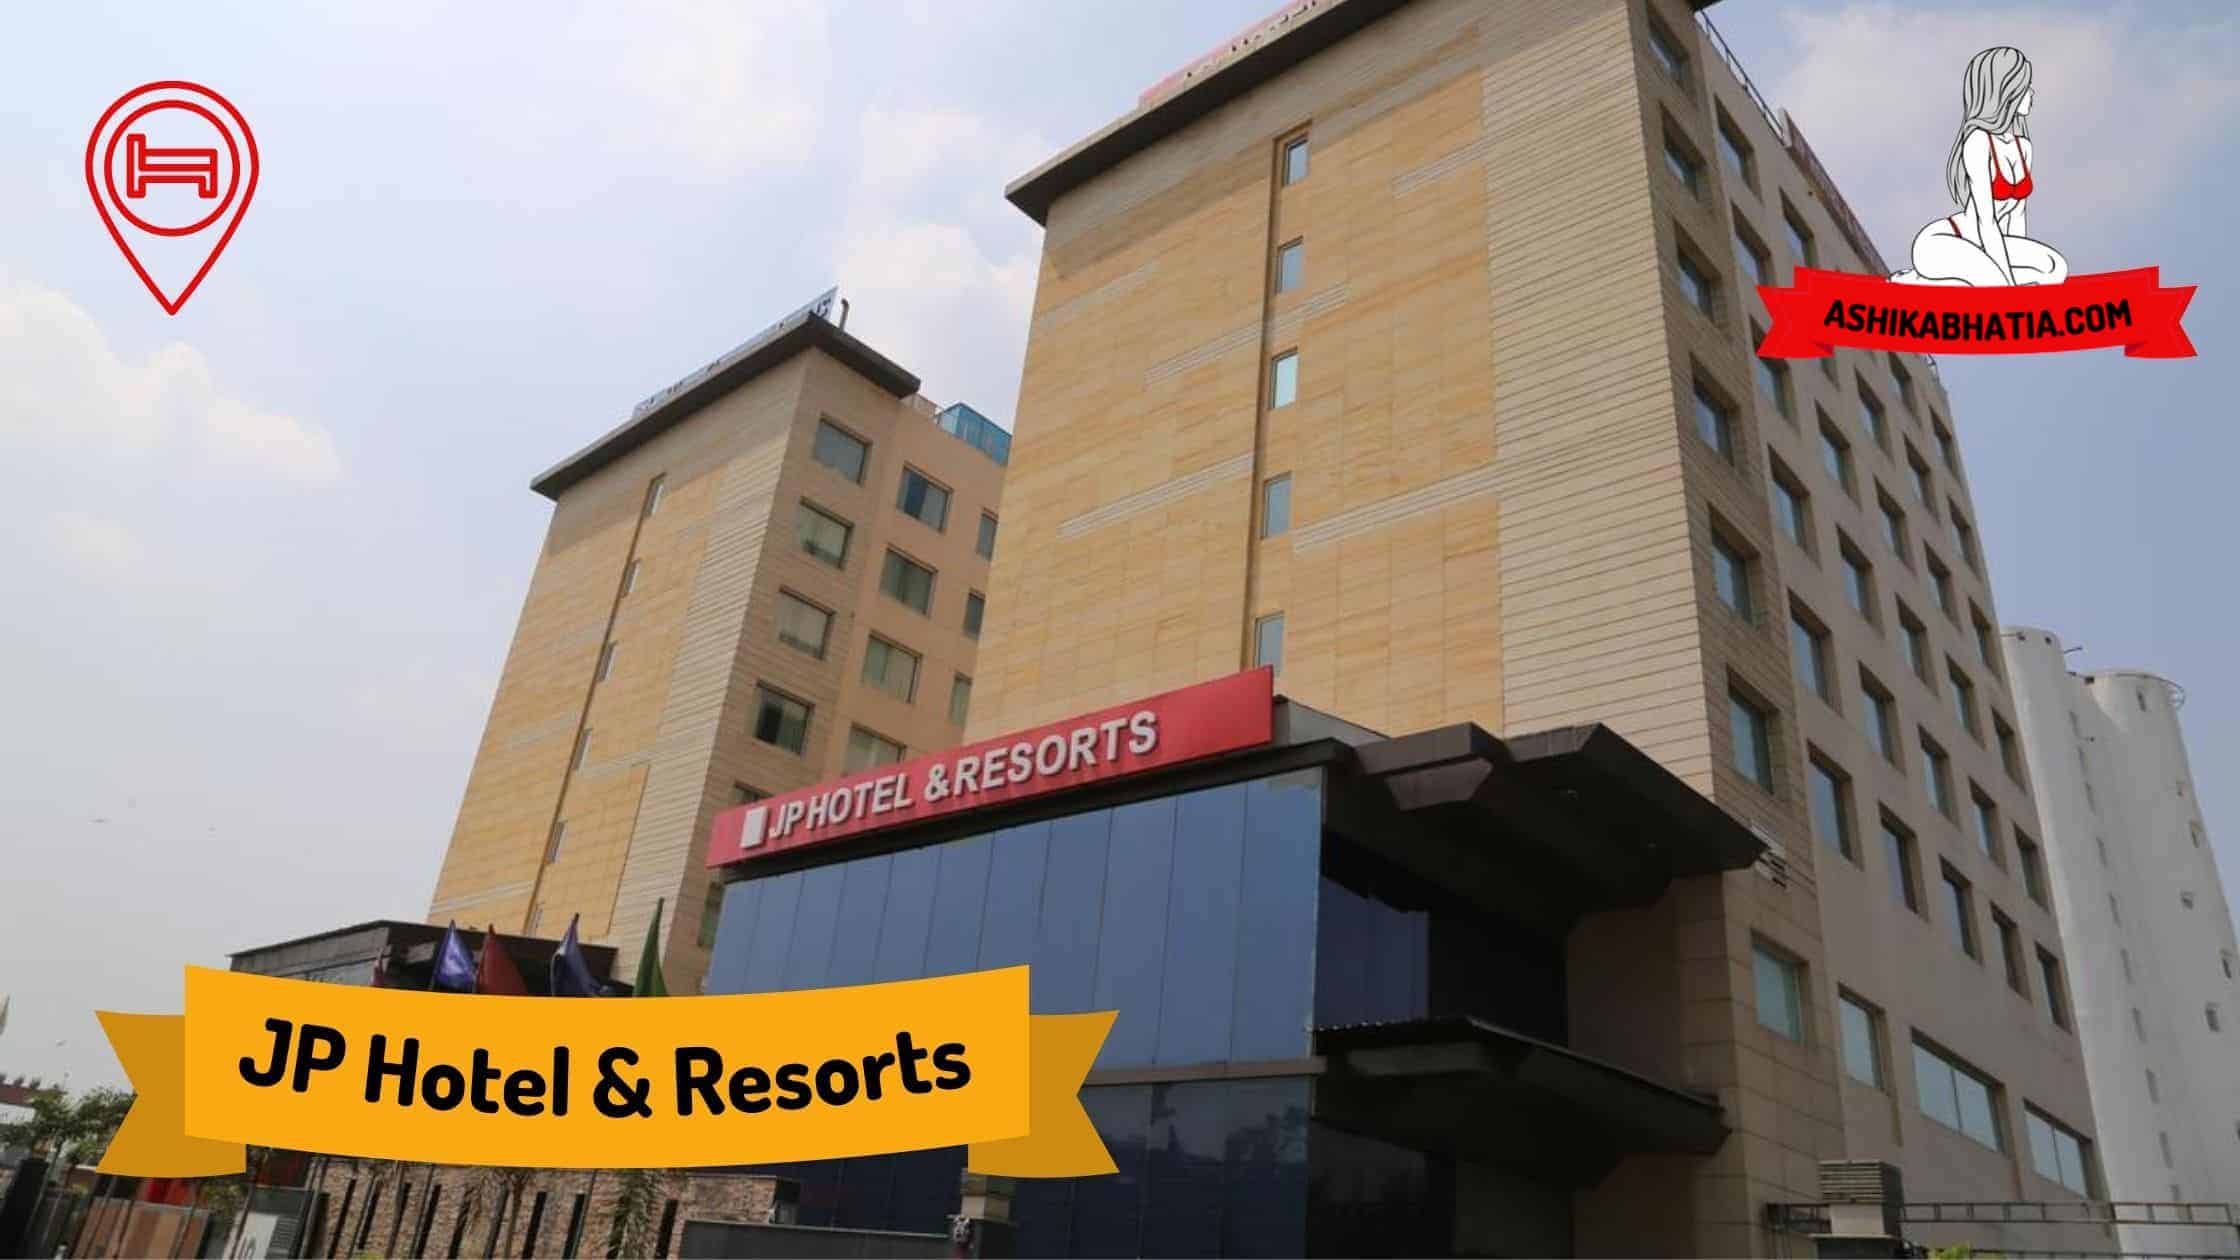 JP Hotel and Resorts Escorts